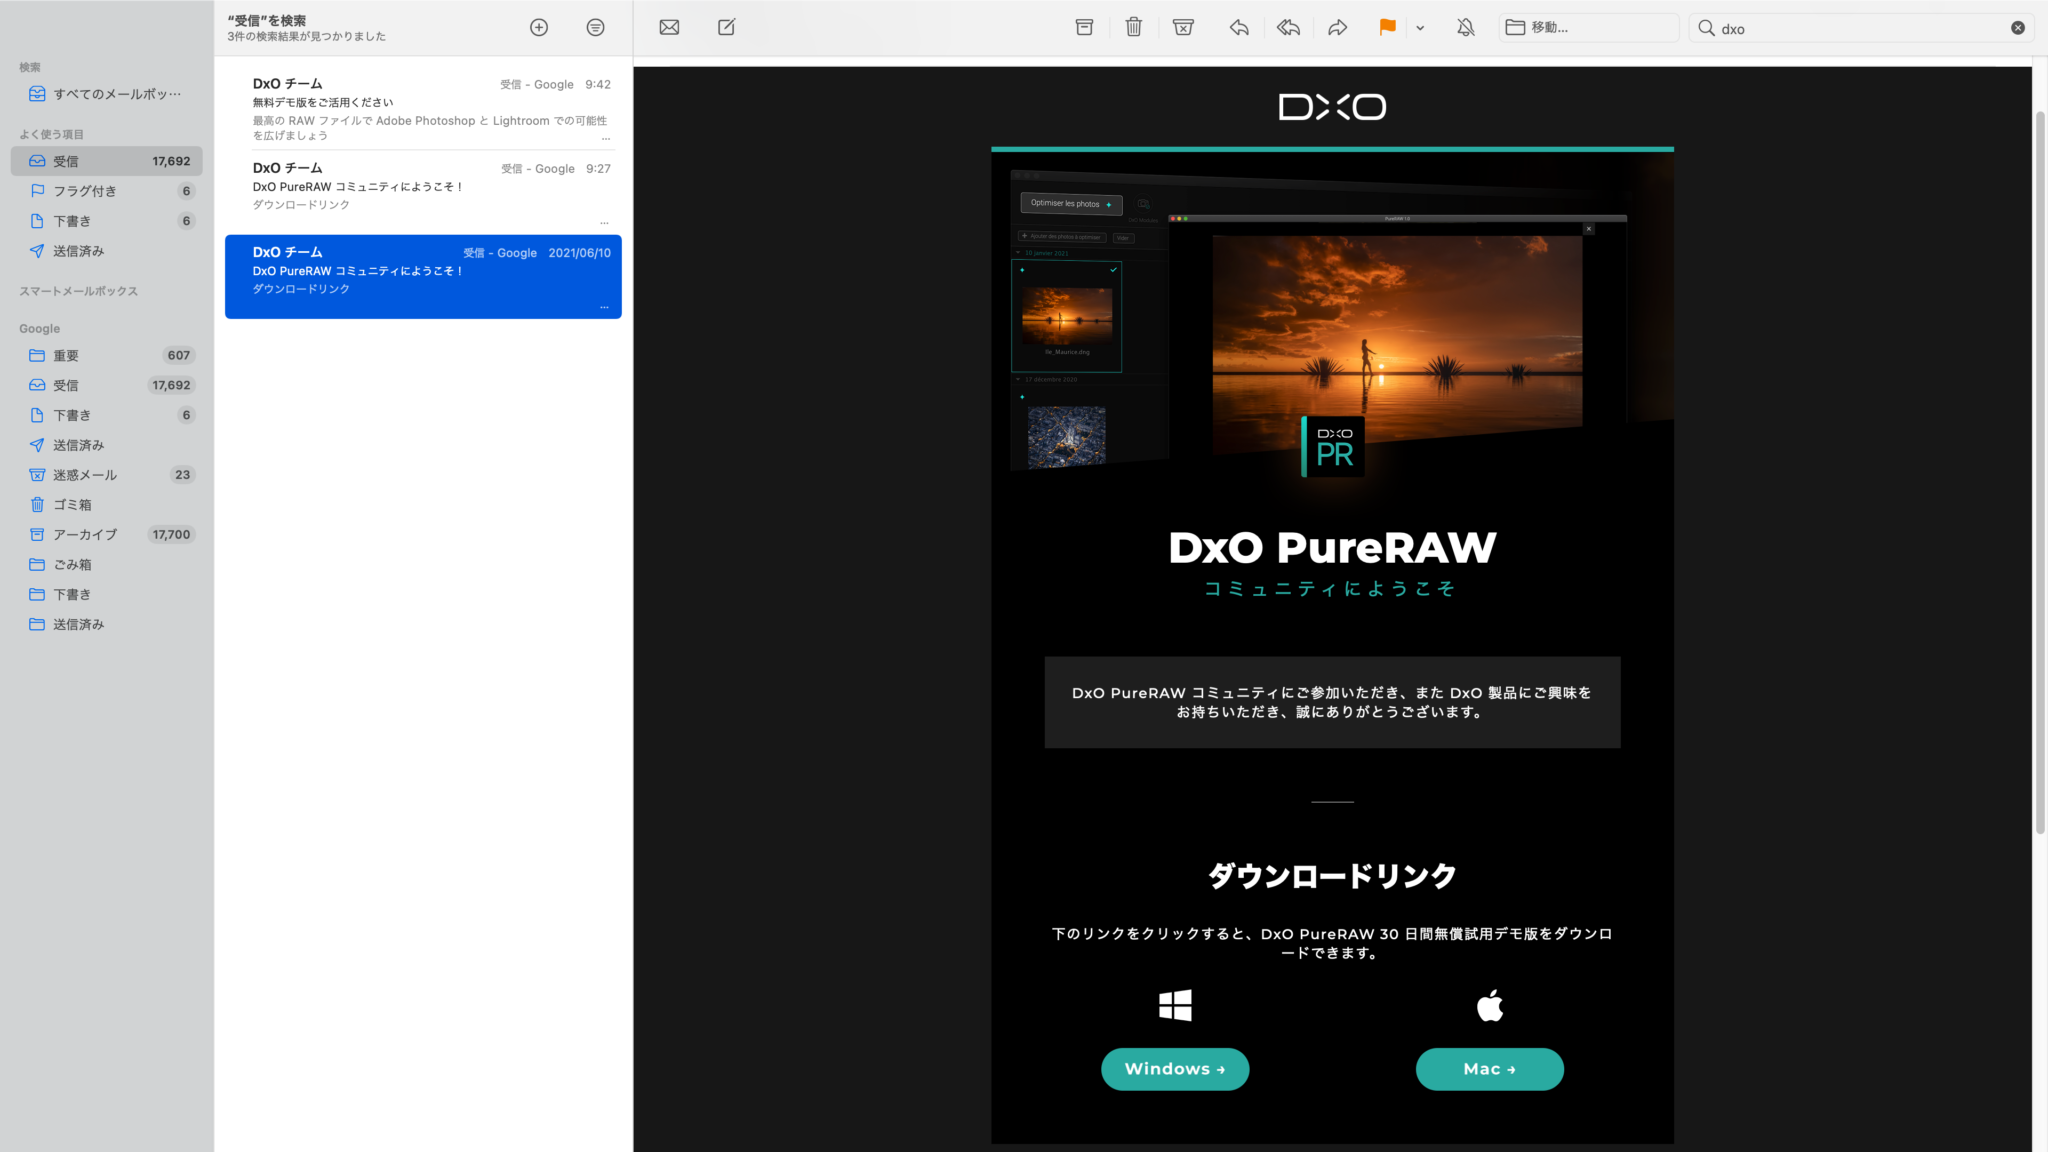 DxO PureRAW 3.4.0.16 for mac instal